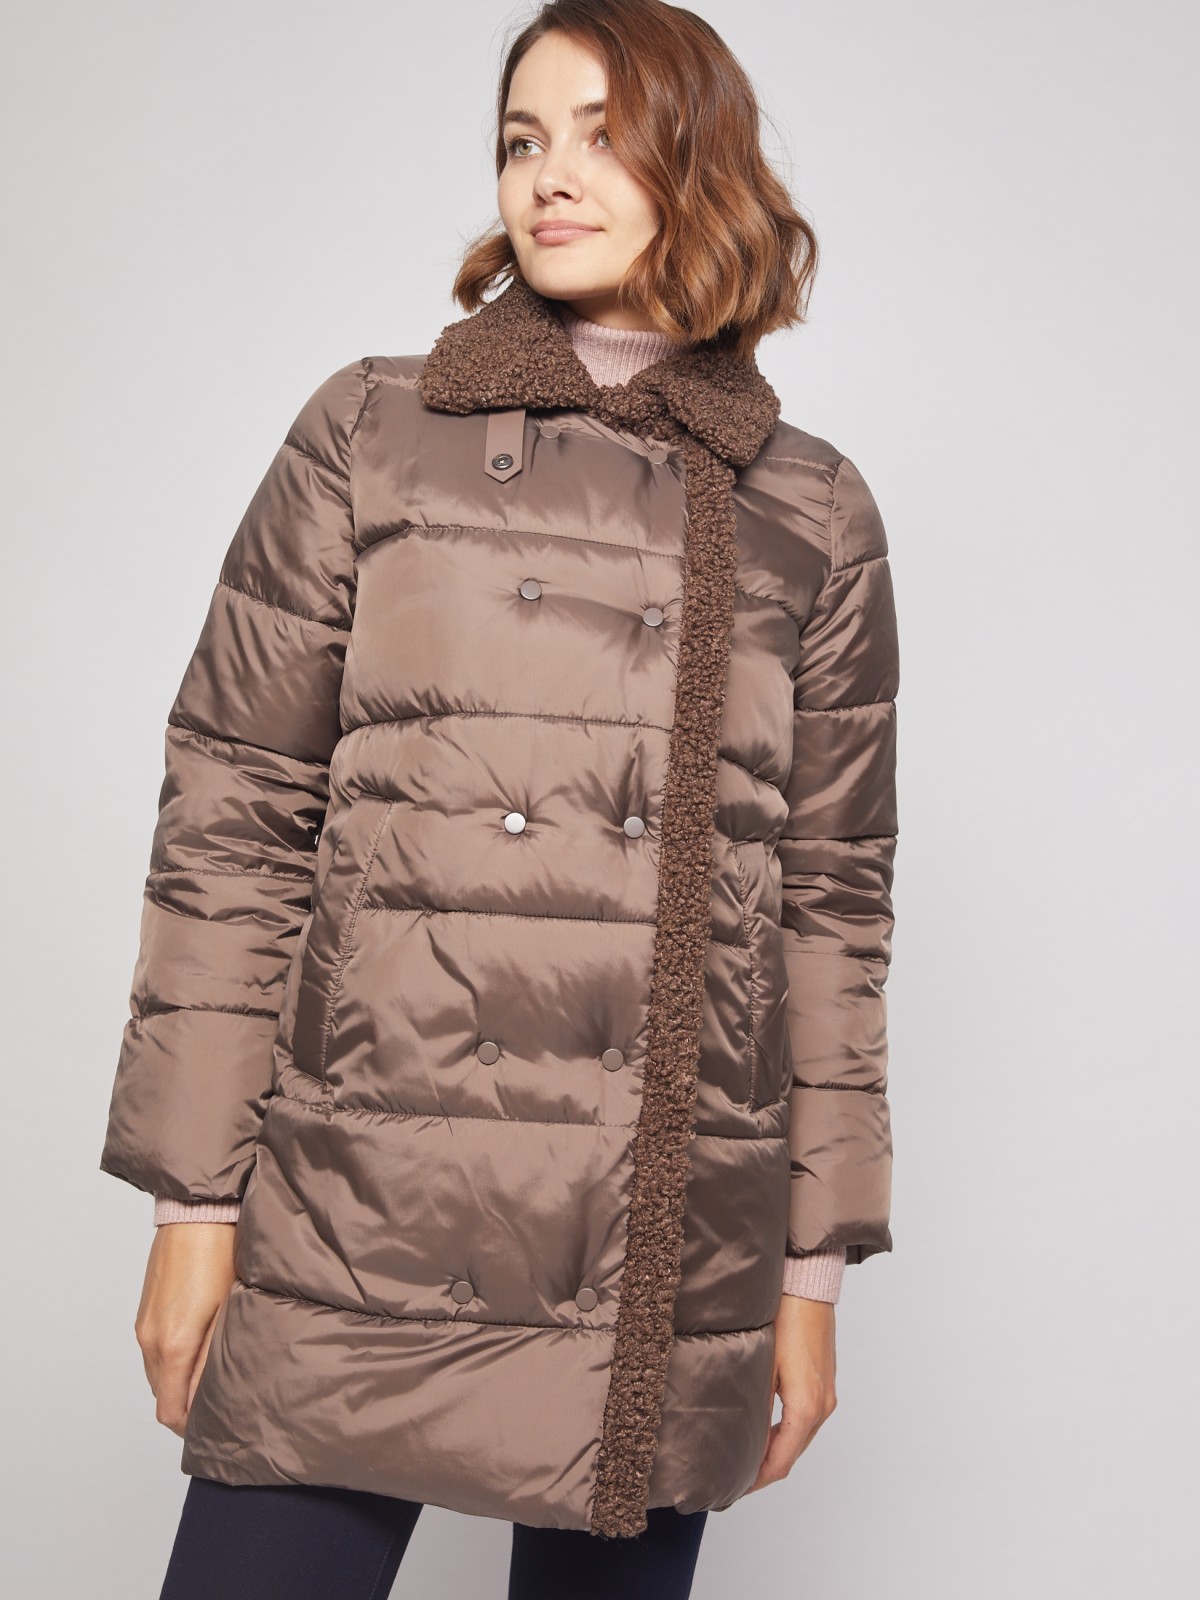 Утеплённое пальто с искусственным мехом zolla 021335239174, цвет коричневый, размер XS - фото 5